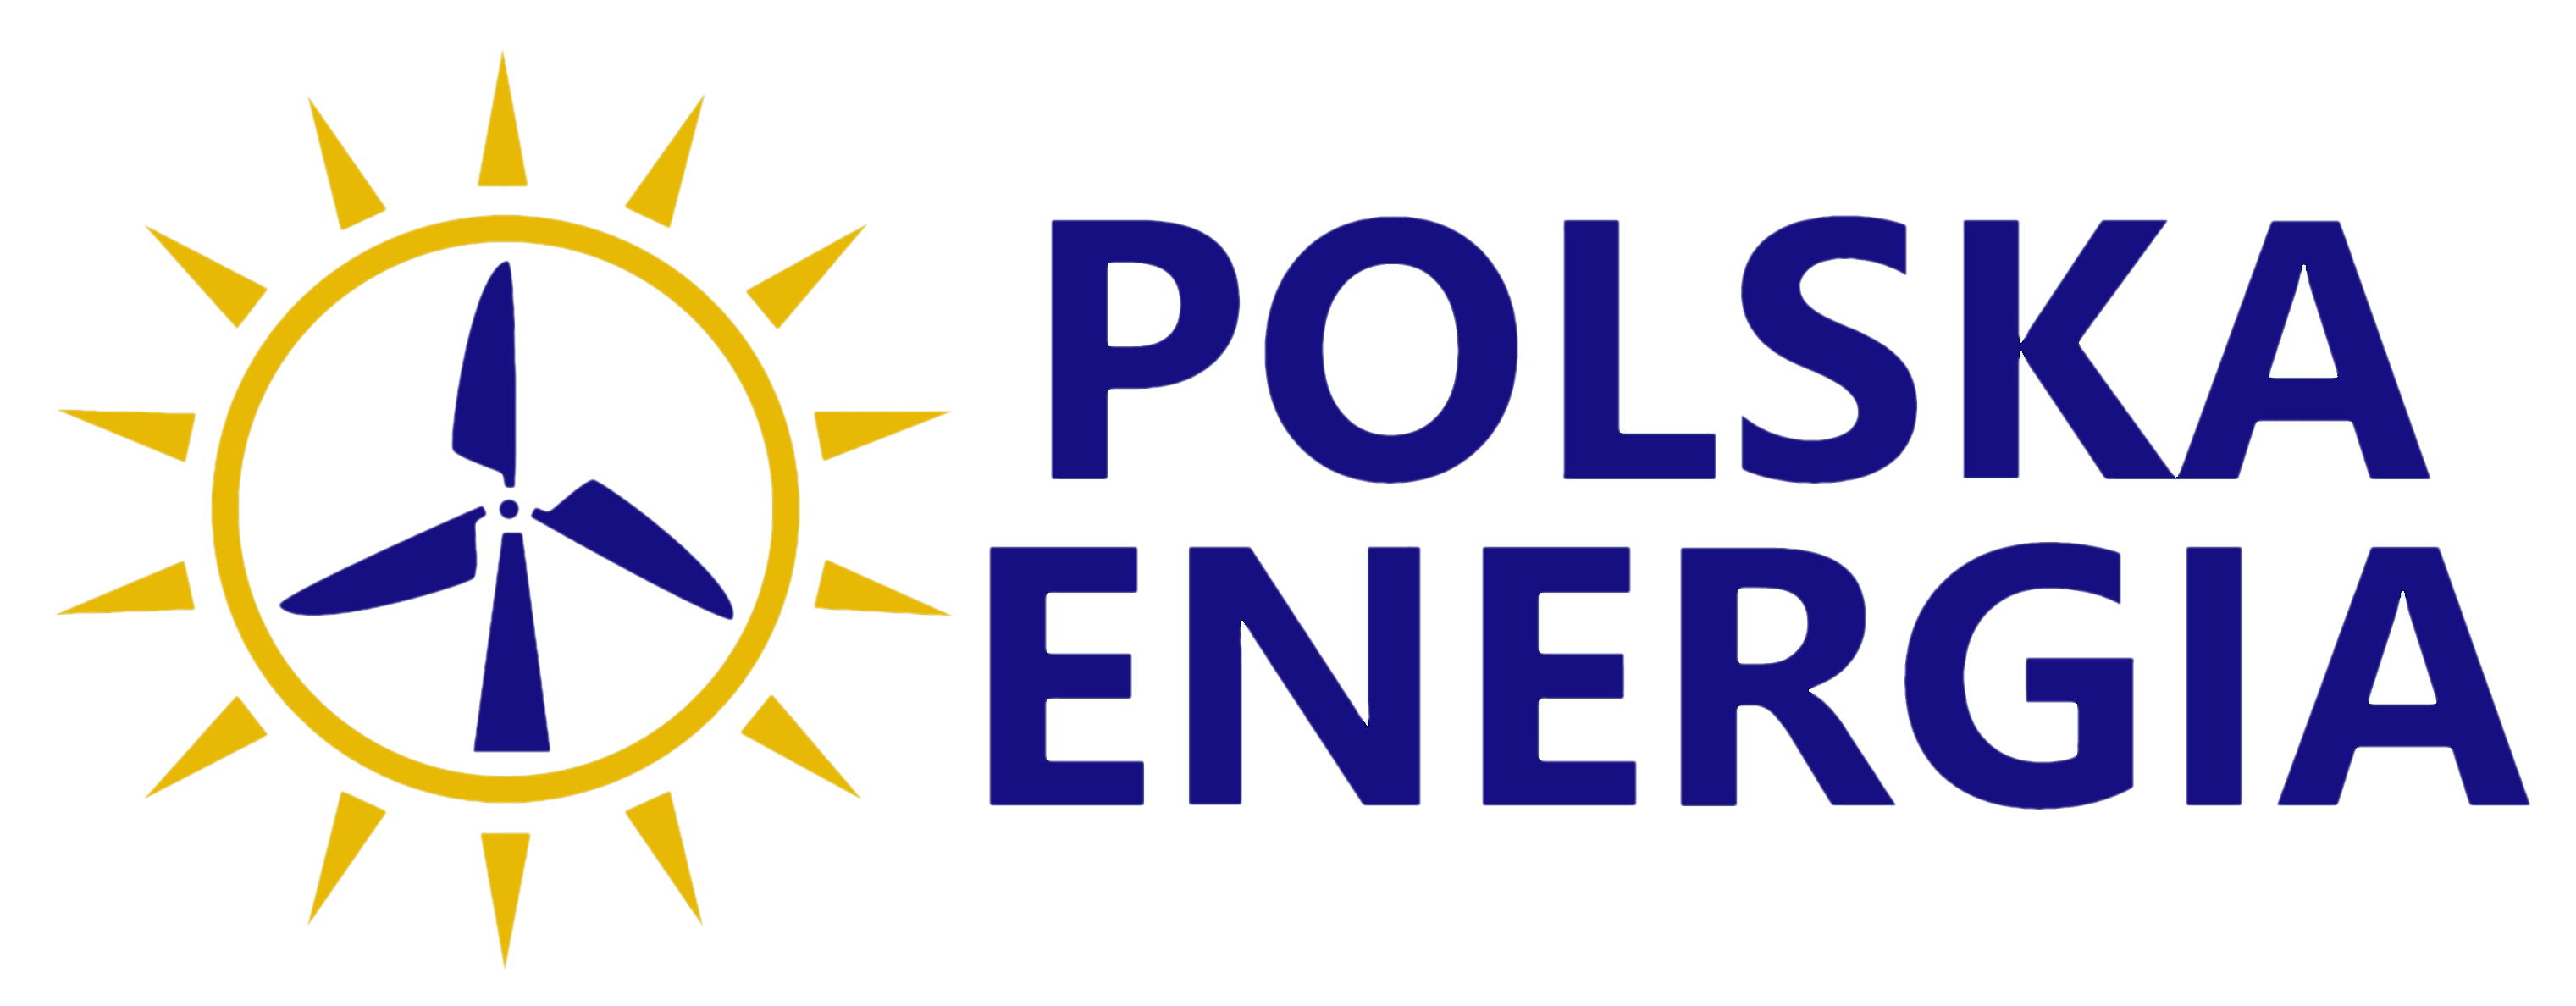 Polska Energia to lider w branży fotowoltaiki